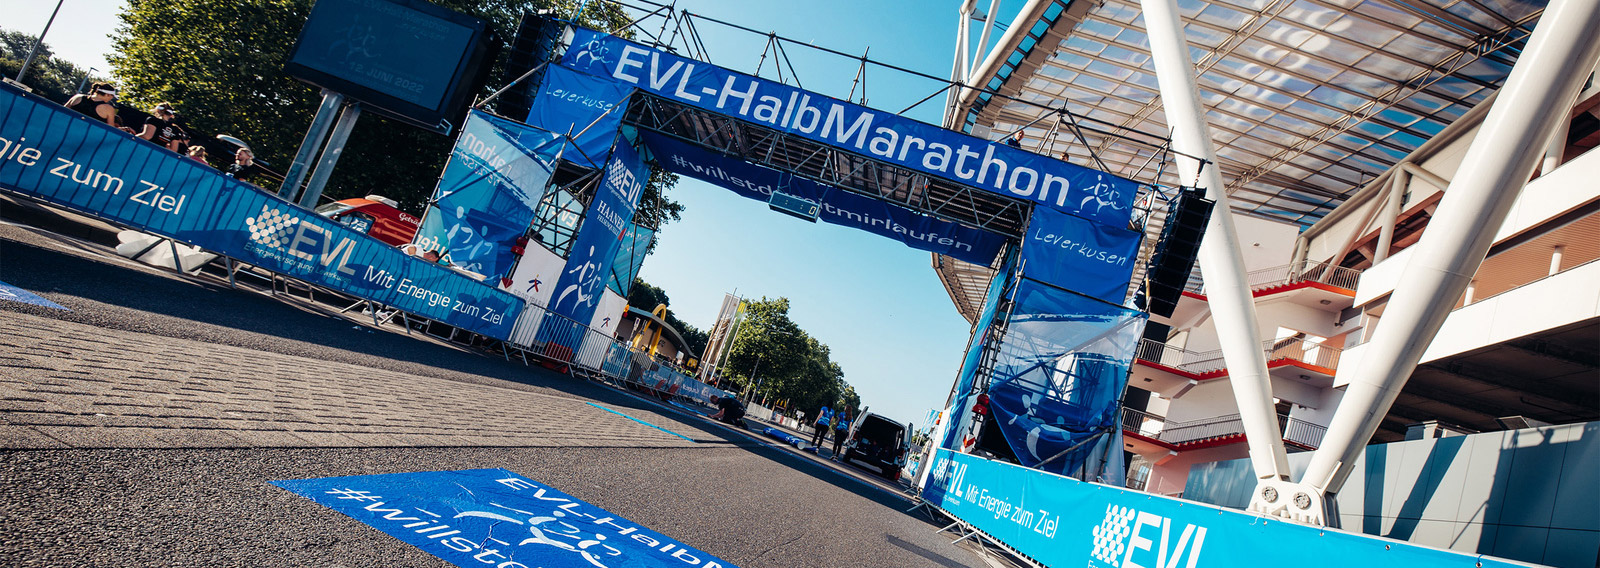 Zielbereich des EVL Halbmarathon direkt vor der Bay Arena Leverkusen